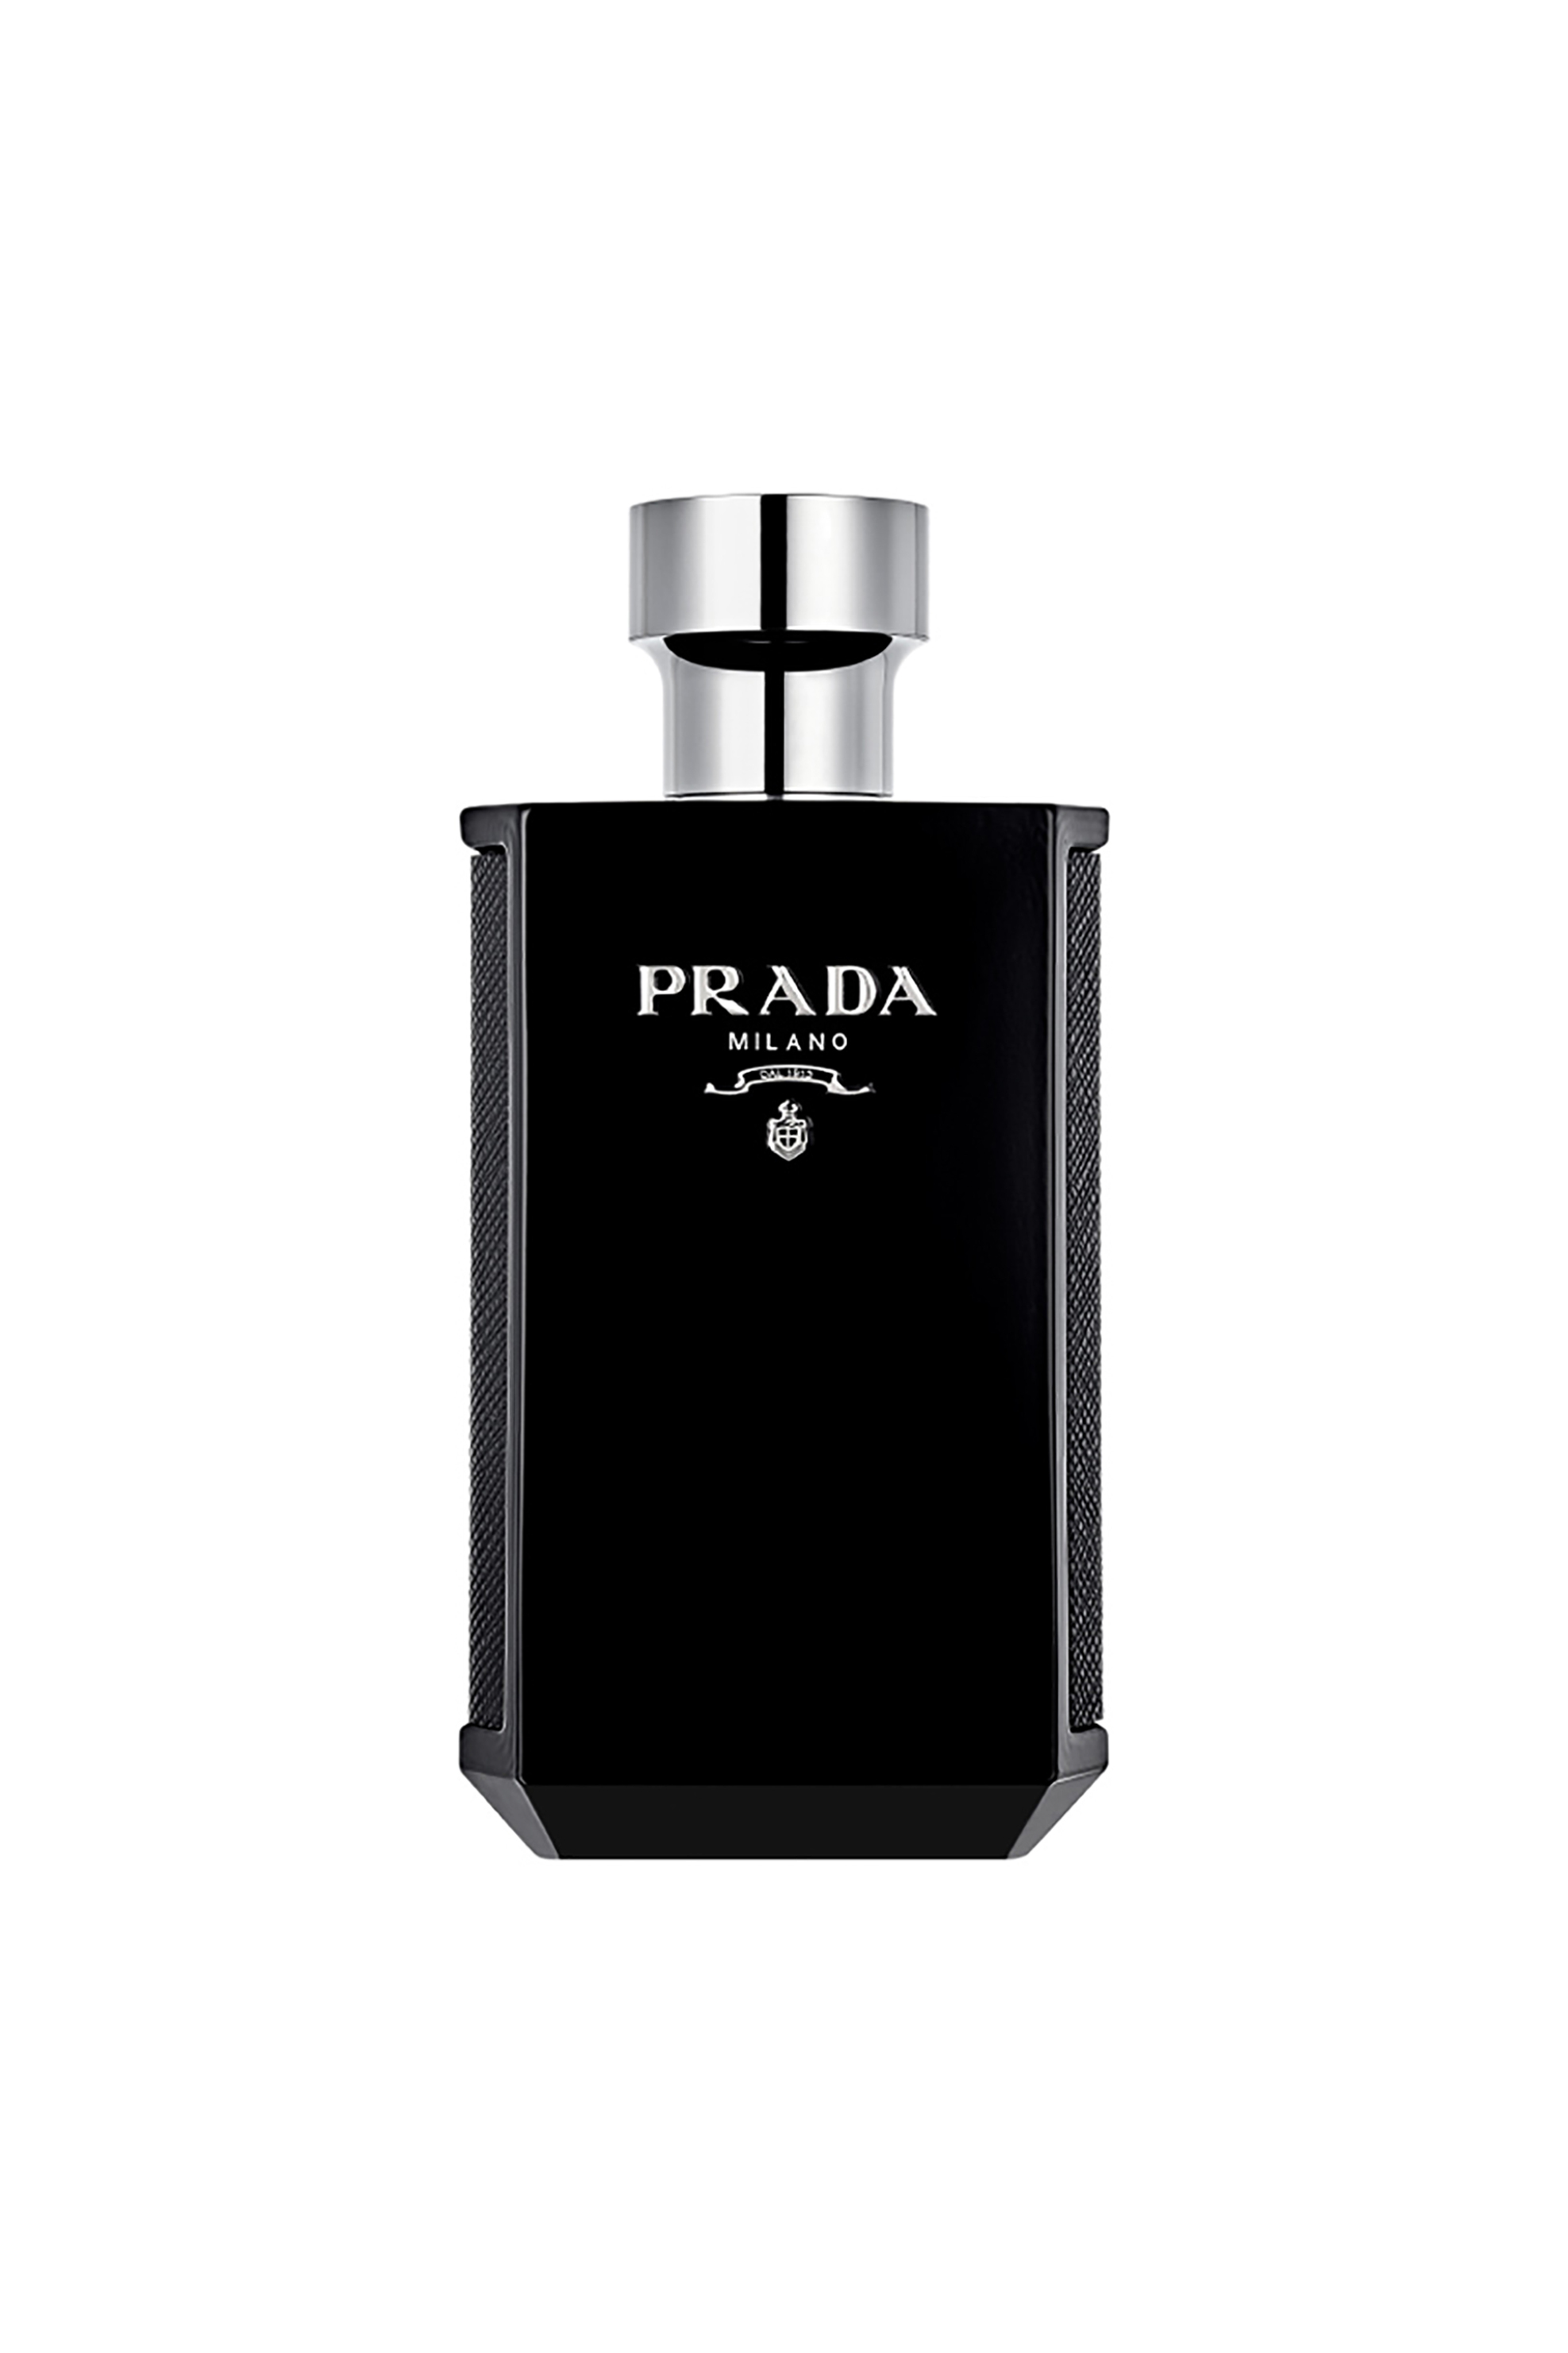 Προϊόντα Ομορφιάς > ΑΡΩΜΑΤΑ > Ανδρικά Αρώματα > Eau de Parfum - Parfum Prada L'Homme Prada Intense Eau de Parfum - 8435137764730